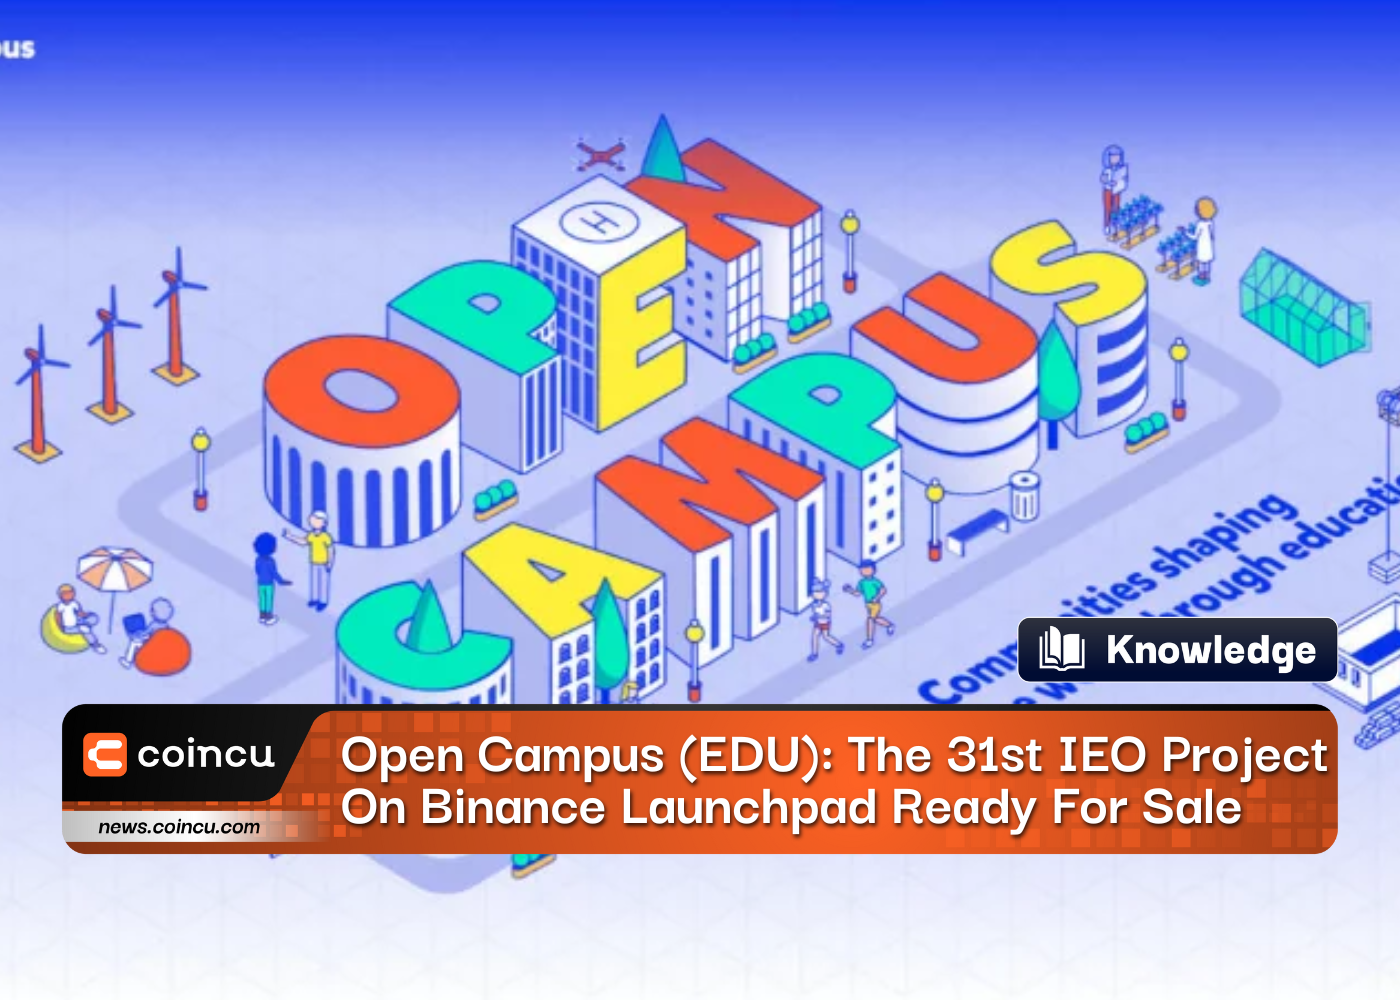 Open Campus (EDU): el proyecto número 31 de IEO en Binance Launchpad listo para la venta